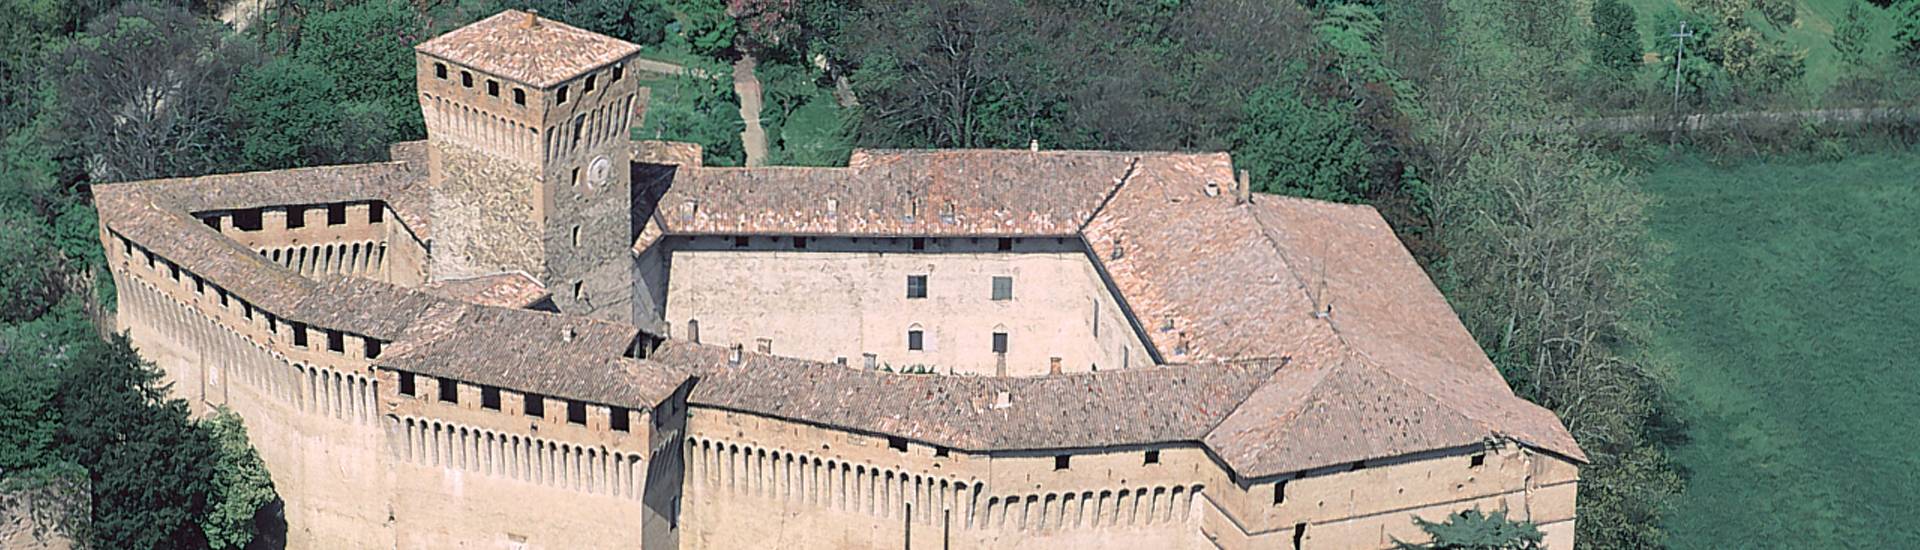 Castello di Montechiarugolo - Panorama photo credits: |Luca Trascinelli| - Luca Trascinelli